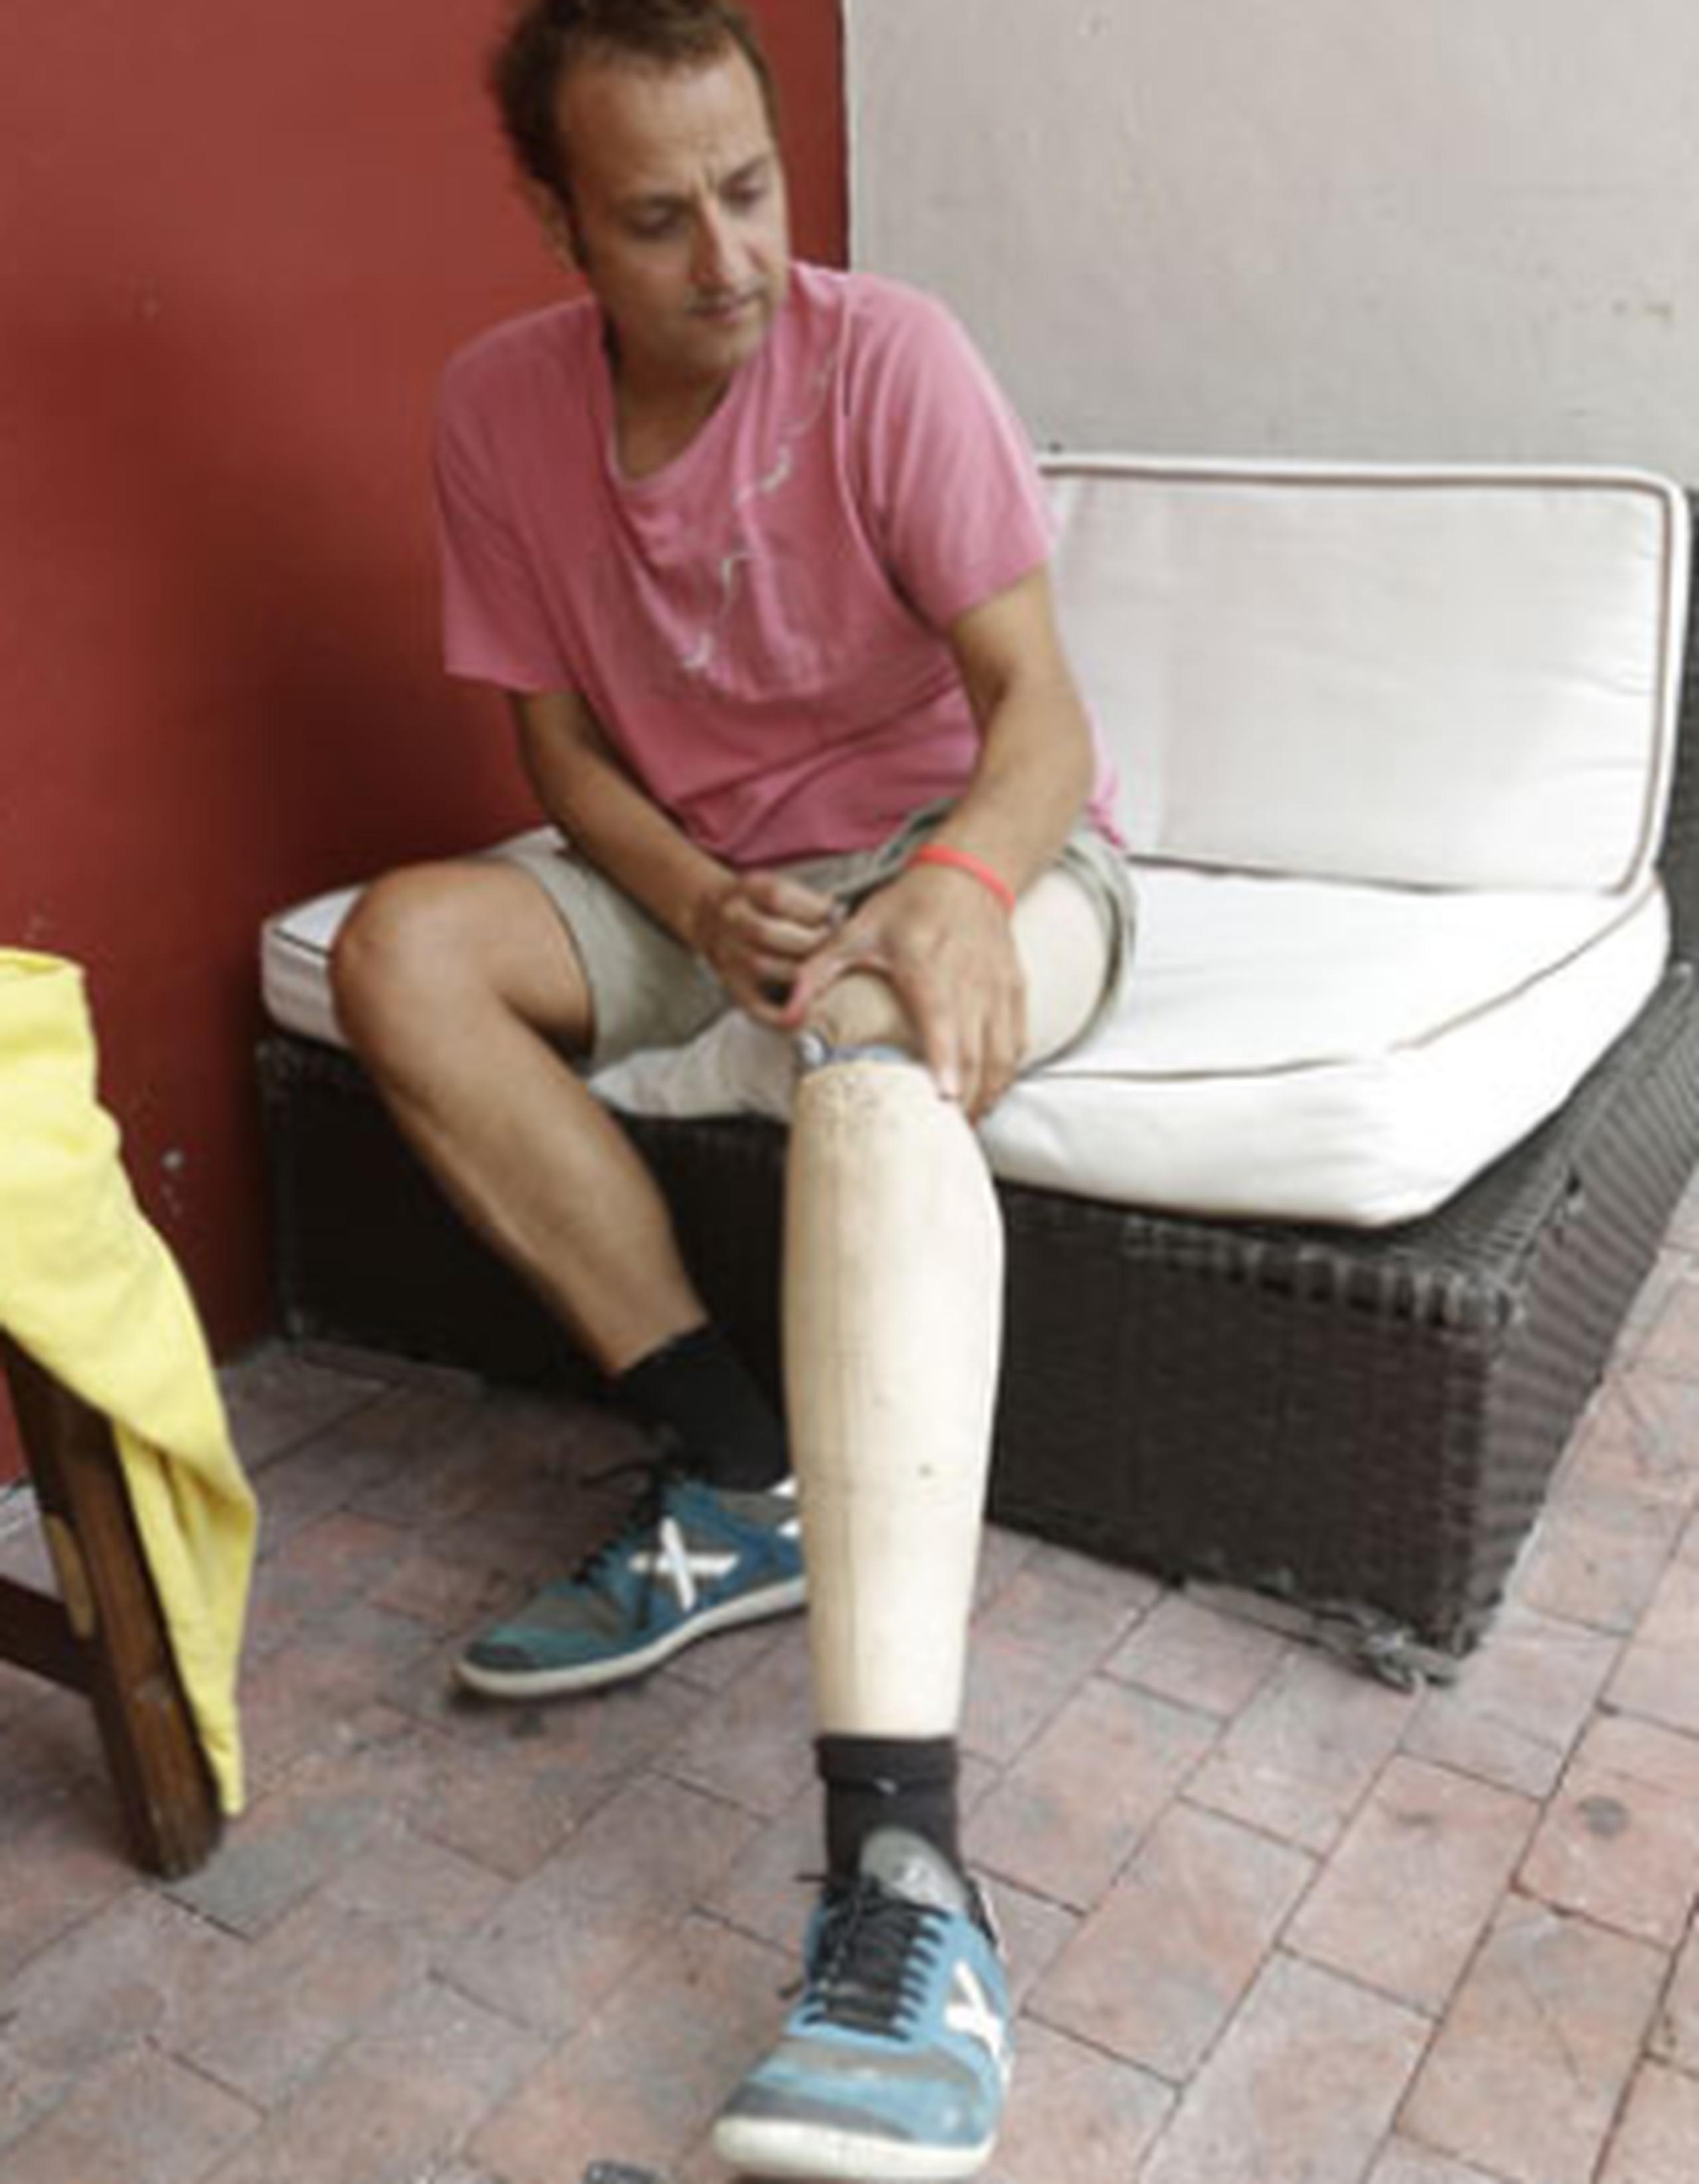 La vida de este futbolista español era el  balompié, pero a los 13 años le diagnosticaron cáncer y su sueño de ser jugador profesional se derrumbó. (AP)